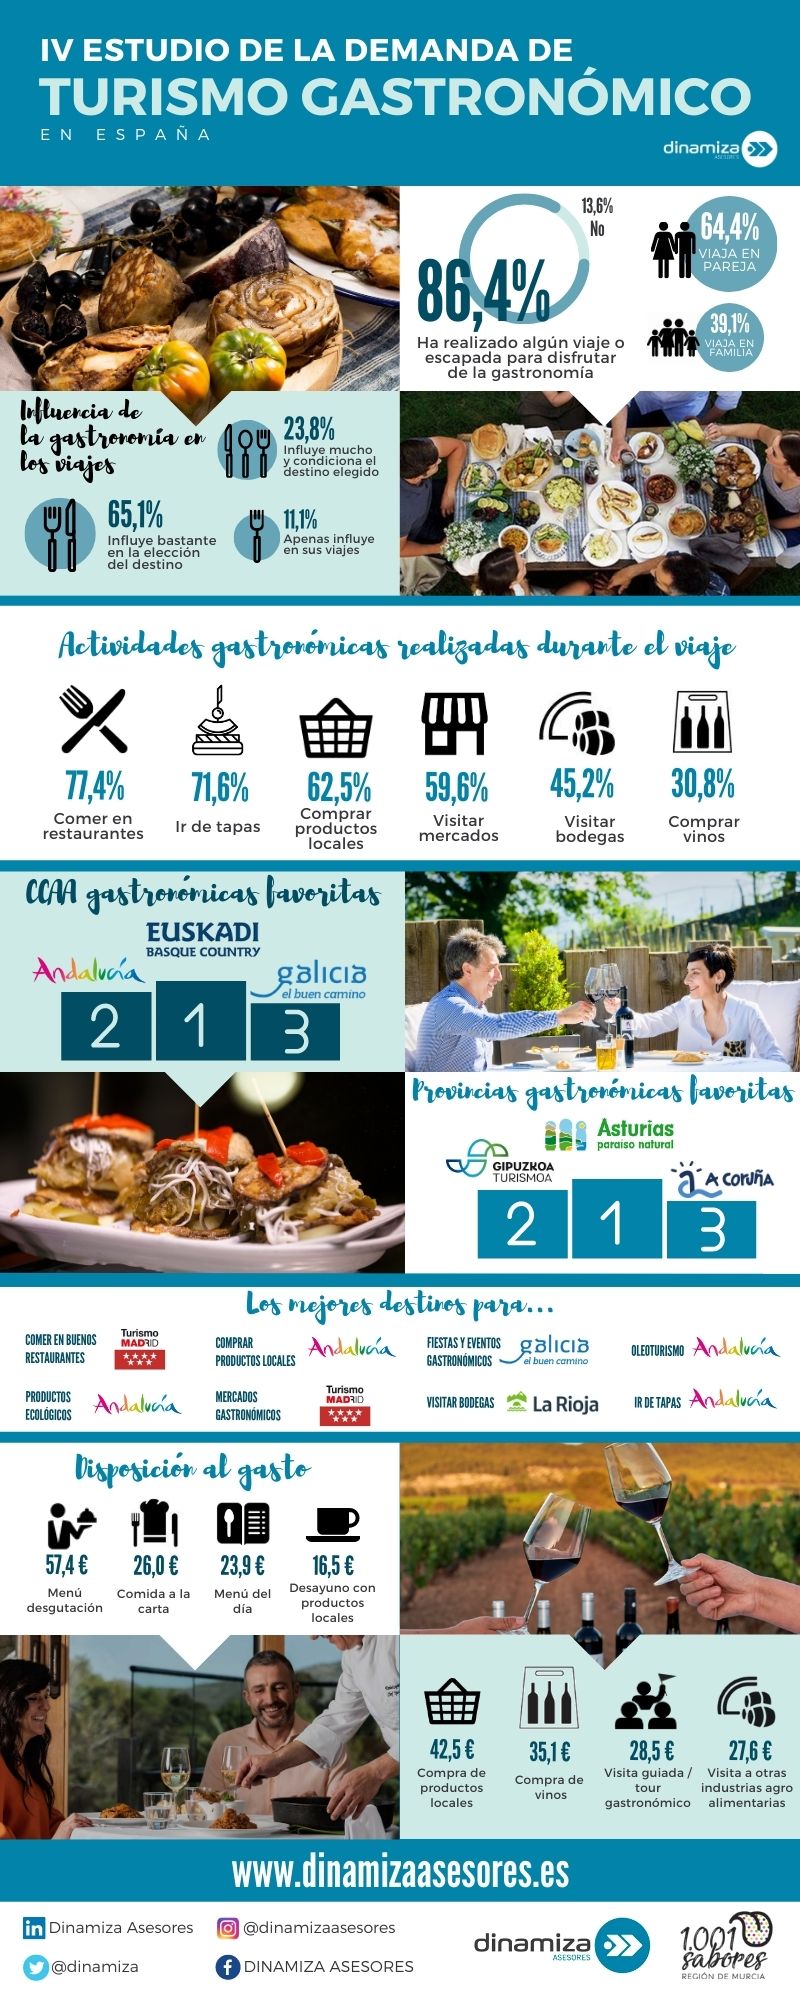 IV Estudio de demanda de turismo gastronómico en España